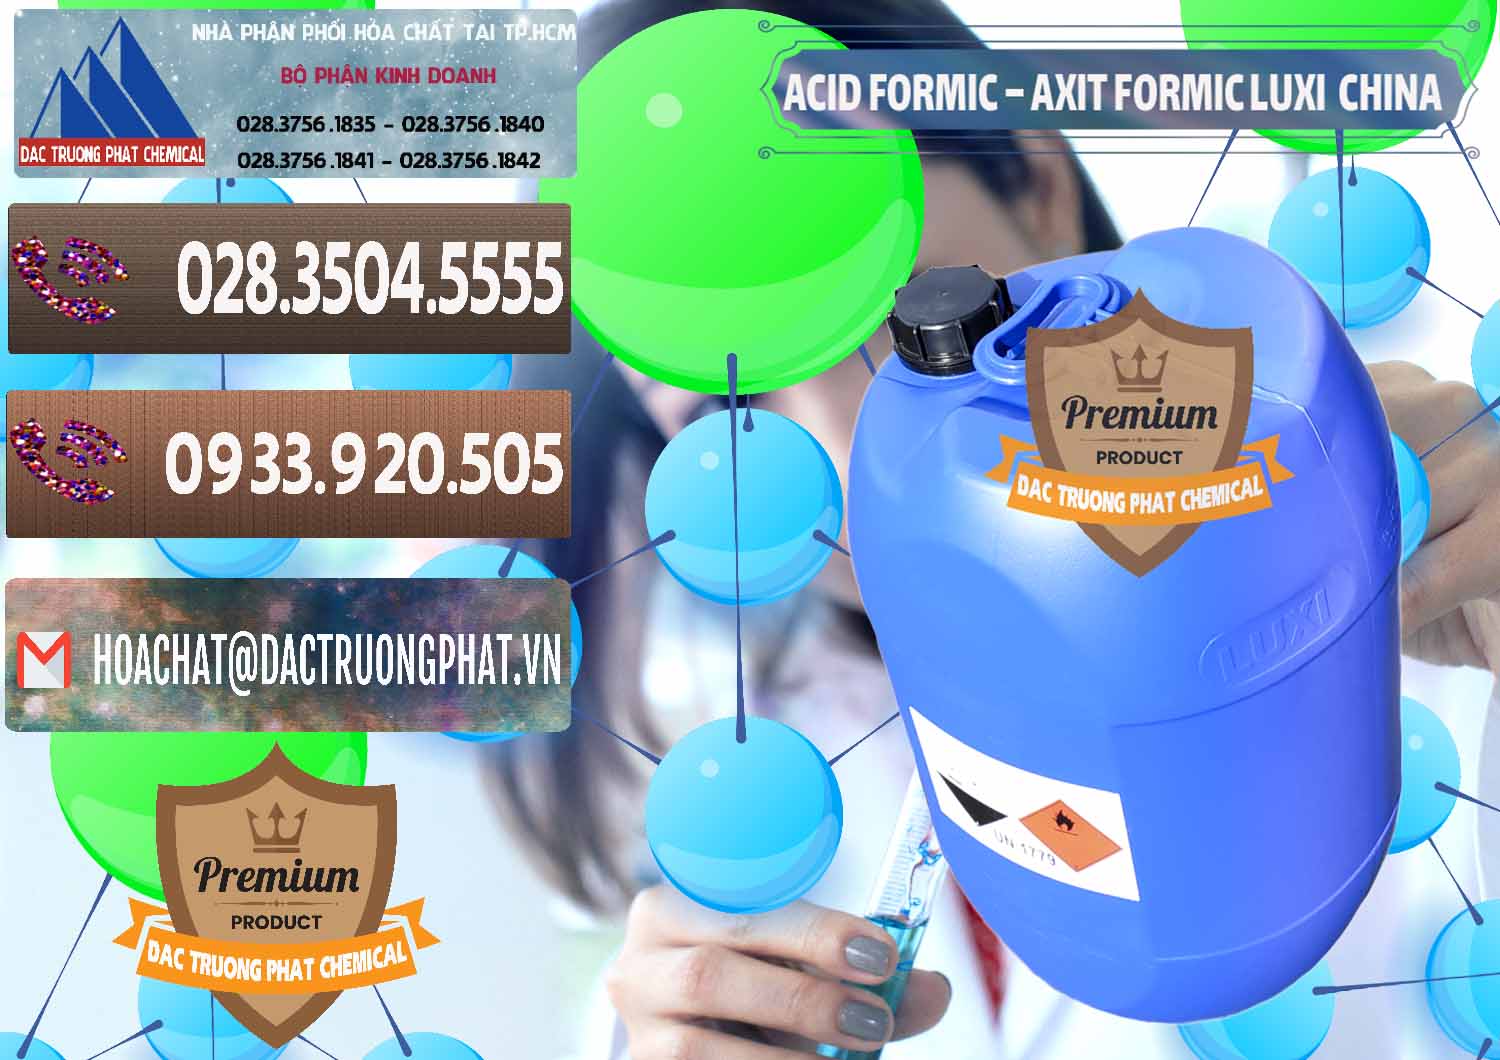 Công ty cung cấp và bán Acid Formic - Axit Formic Luxi Trung Quốc China - 0029 - Nơi cung ứng & phân phối hóa chất tại TP.HCM - hoachatviet.net